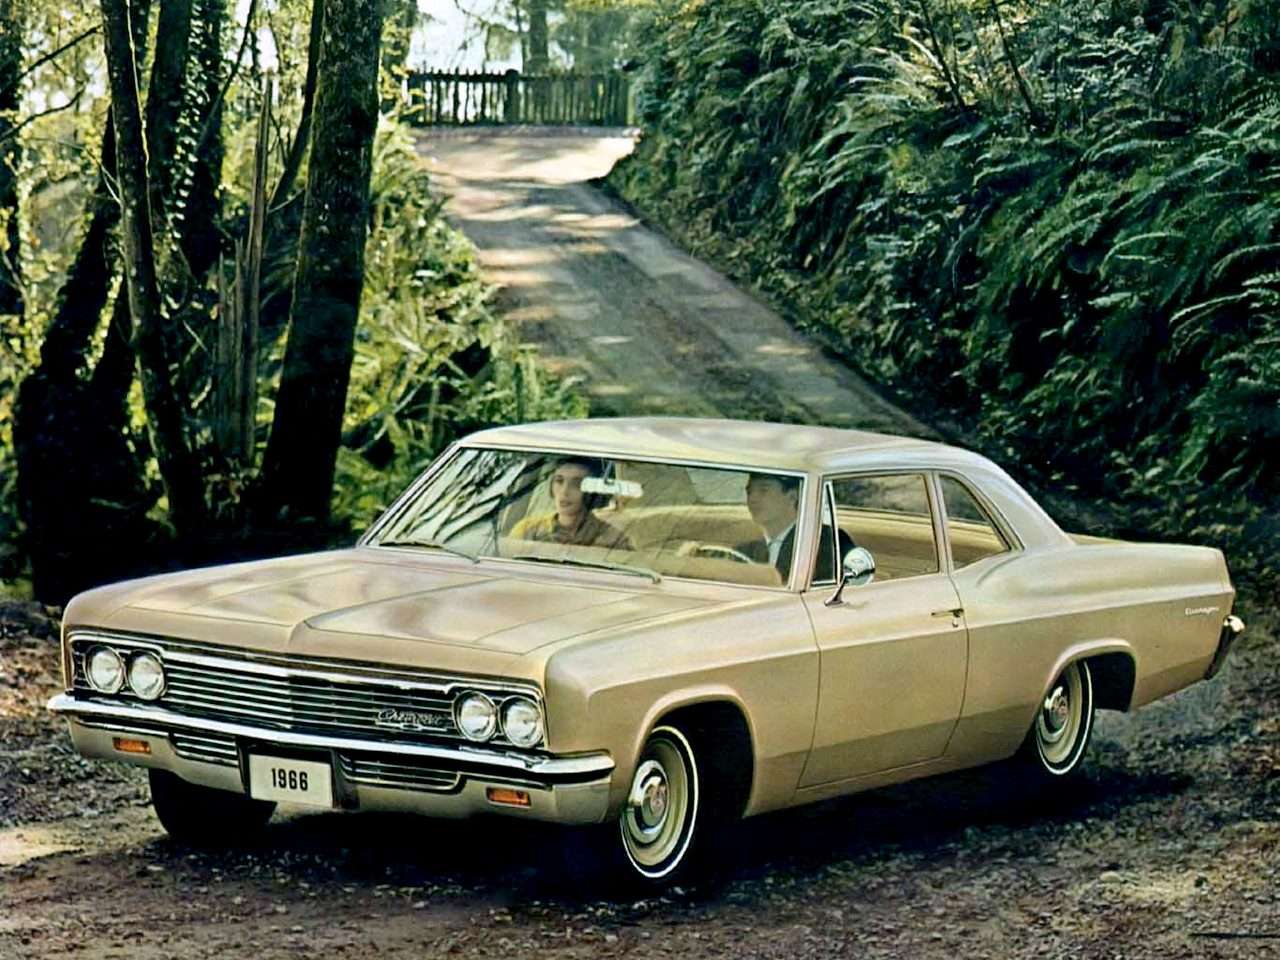 1966 Chevrolet Biscayne 2-вратата седан онлайн пъзел